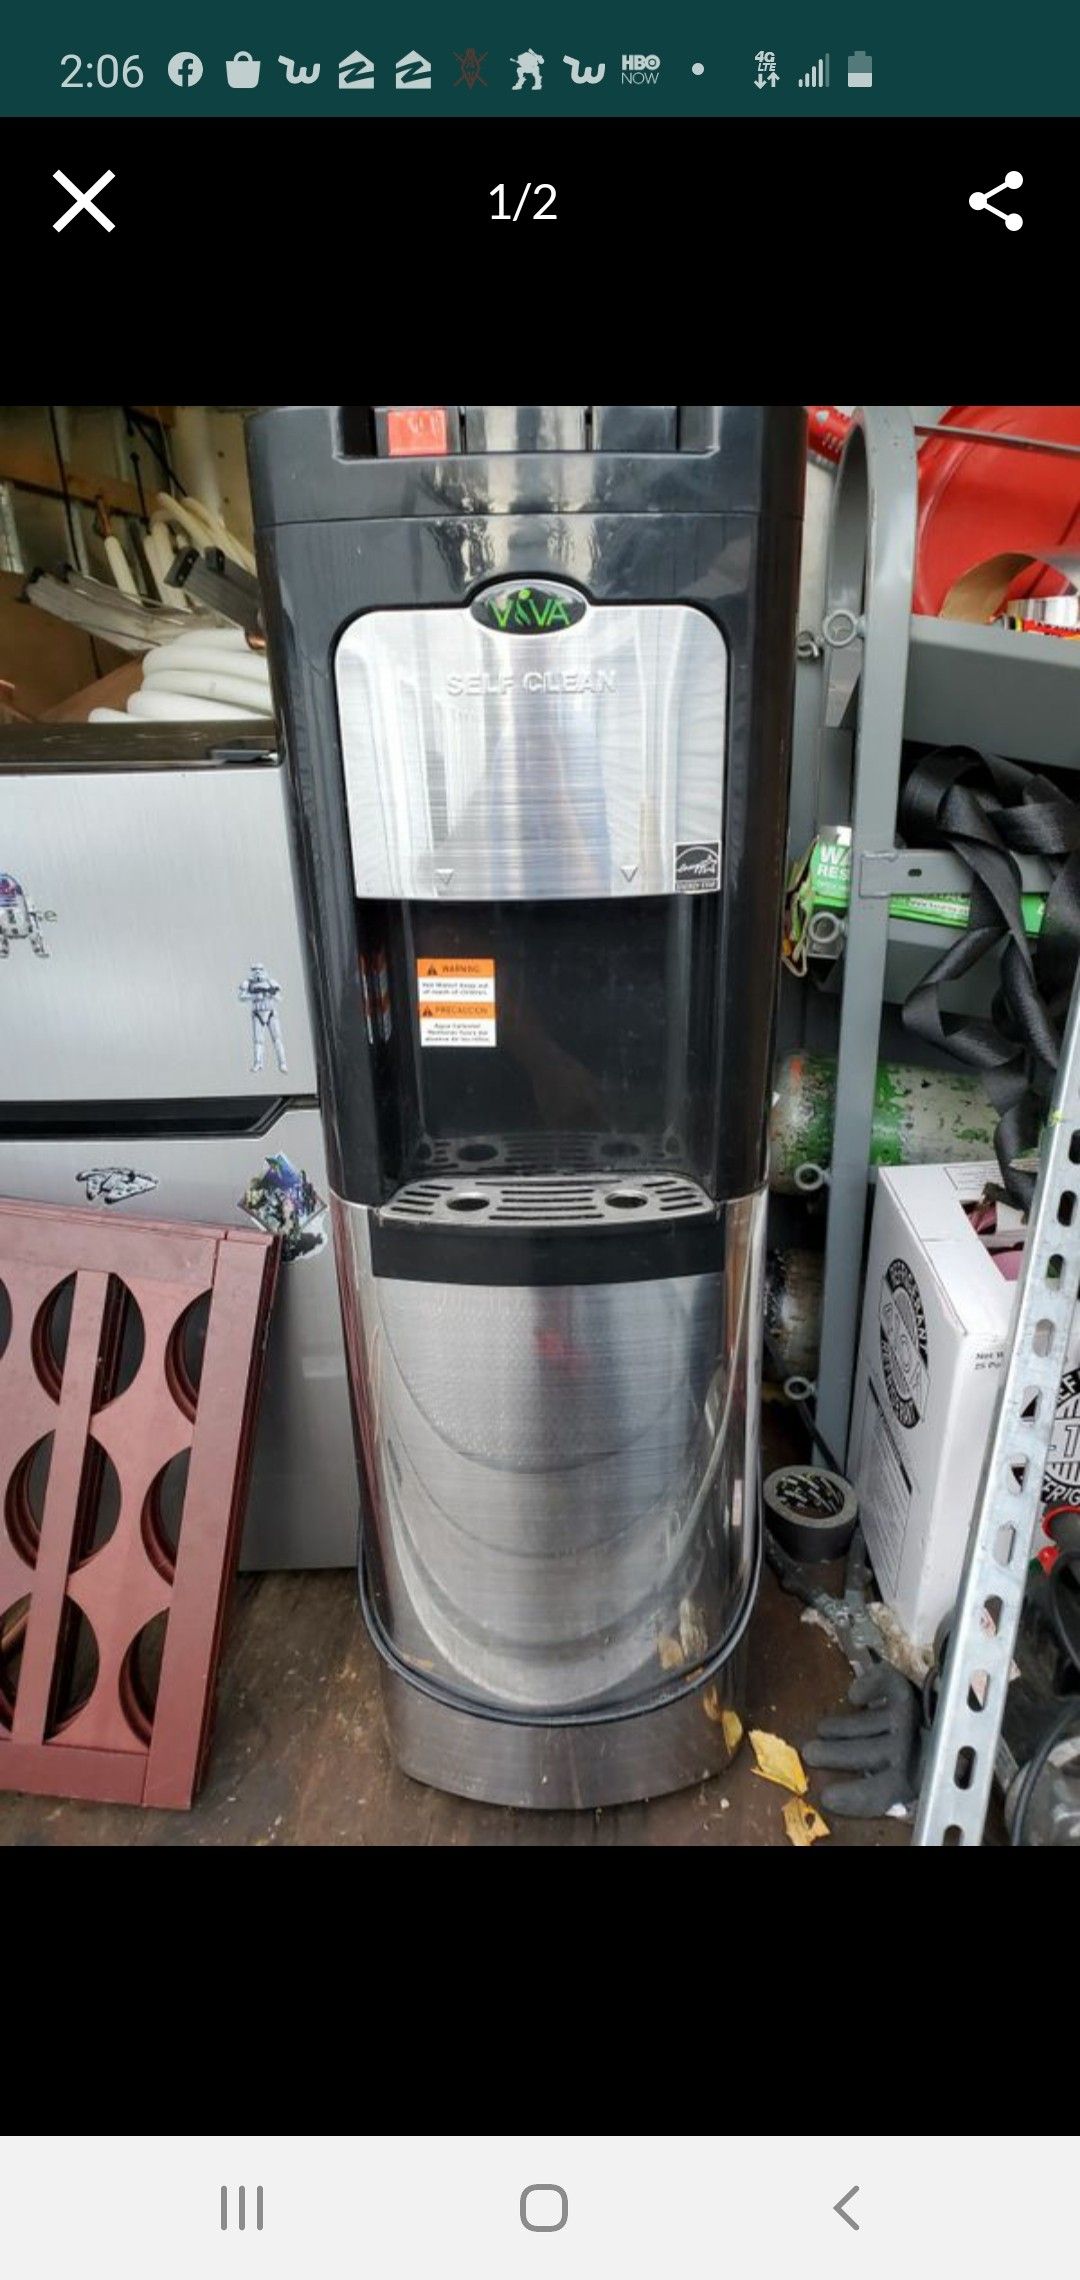 Costco water heater cooler